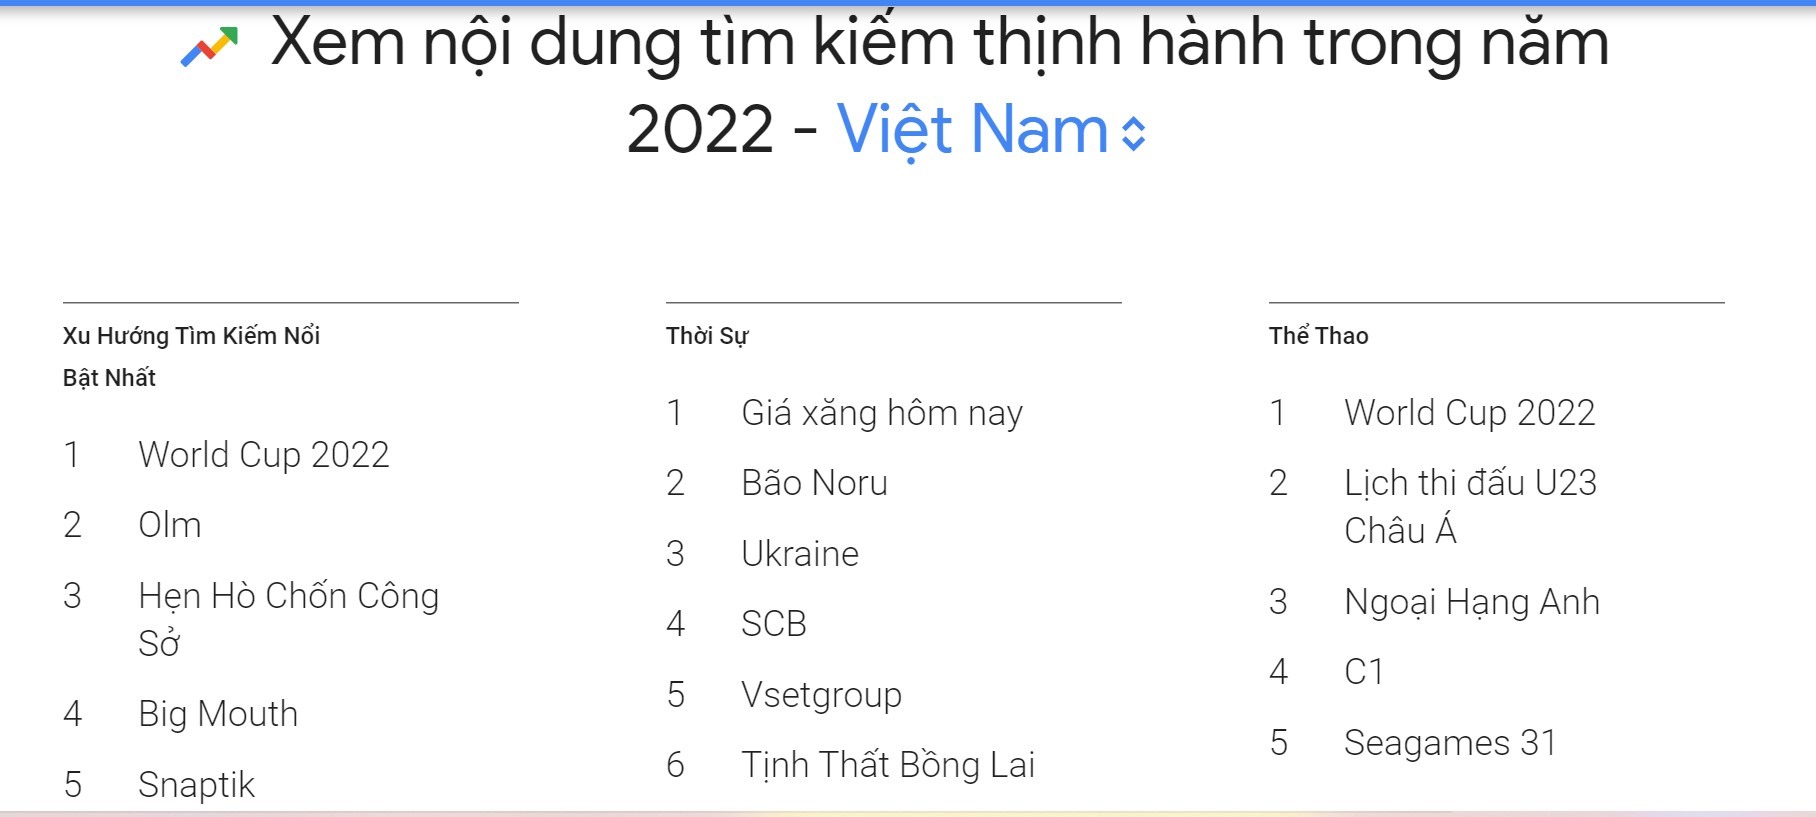 Những từ khóa người Việt tìm kiếm nhiều trên Google 2022. Ảnh chụp màn hình Google